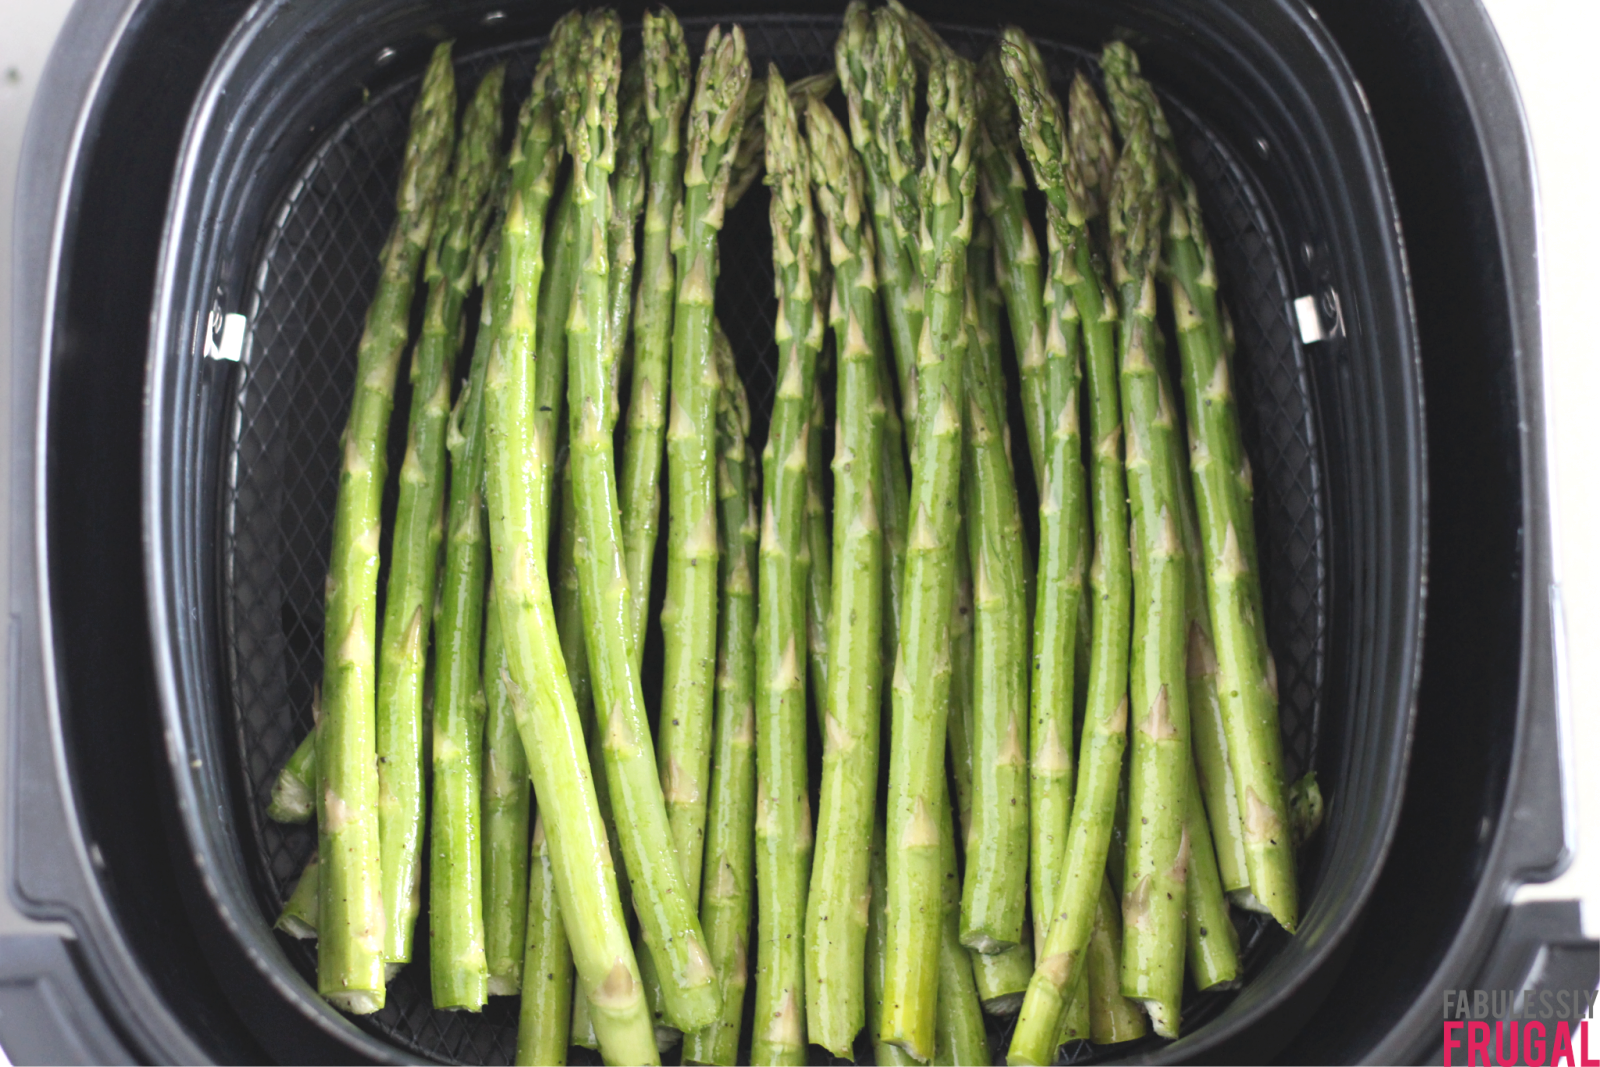 asparagus in air fryer